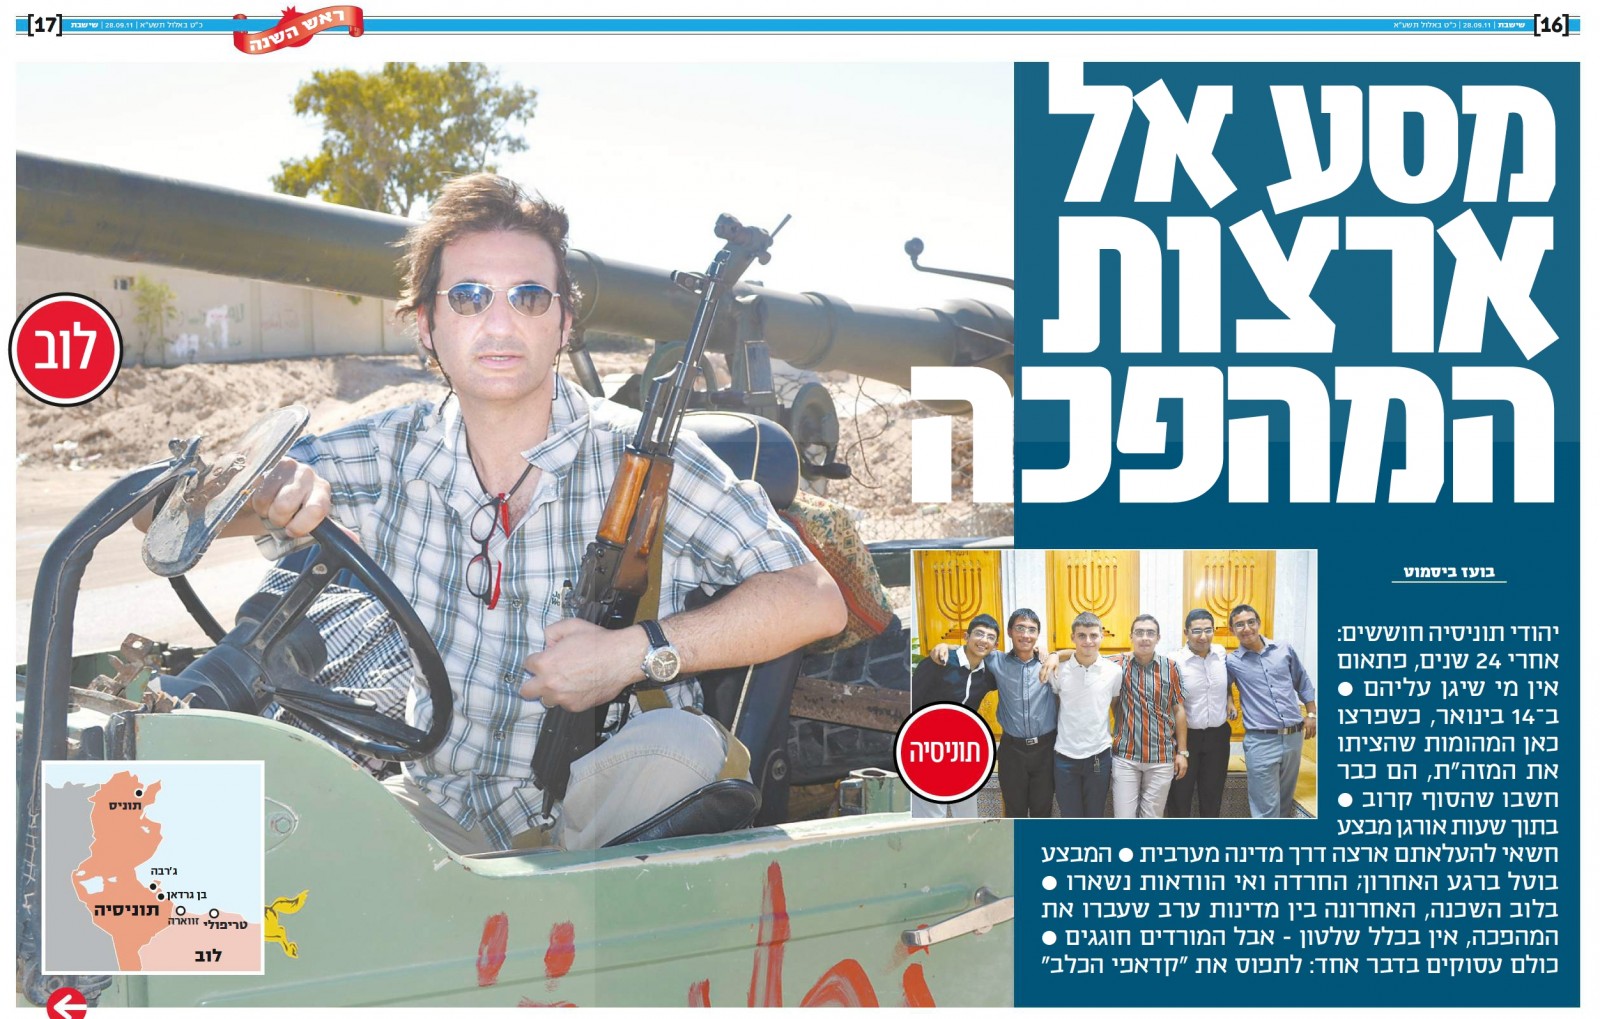 בועז ביסמוט מצולם בג'יפ בלוב. "ישראל היום", 28.9.2011